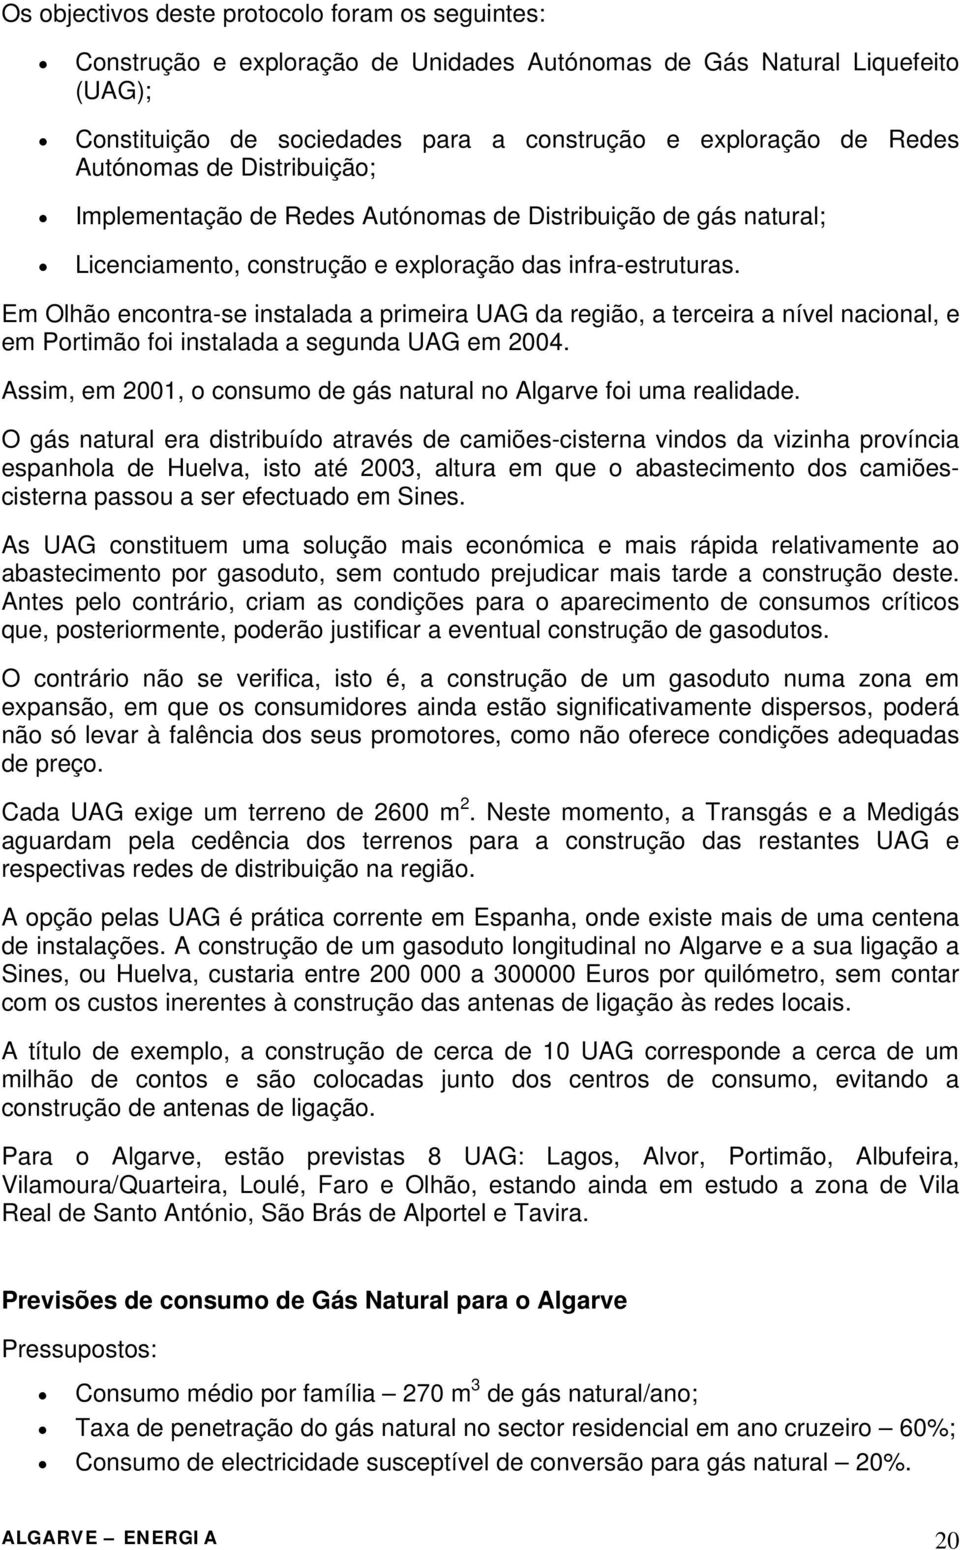 Em Olhão encontra-se instalada a primeira UAG da região, a terceira a nível nacional, e em Portimão foi instalada a segunda UAG em 2004.